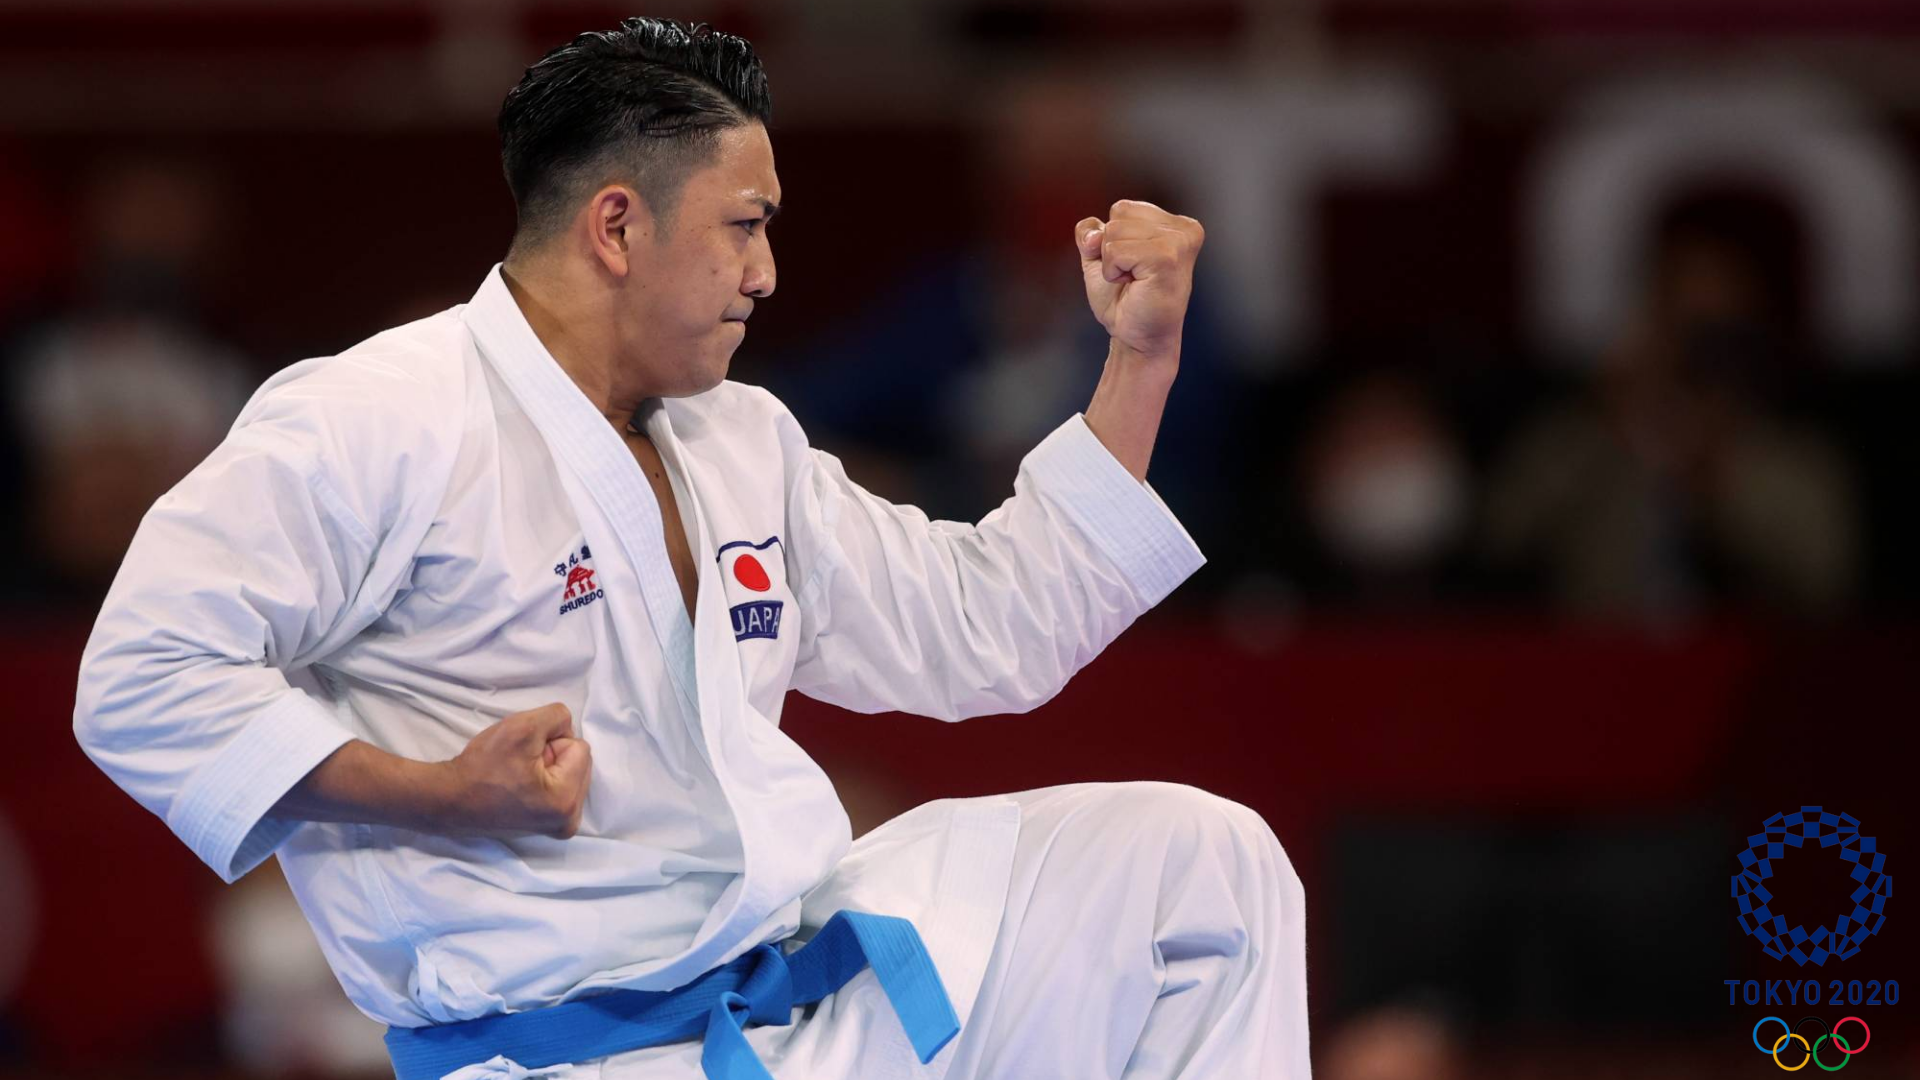 2020 Tokyo Olimpiyatları Türkiye Raporu için karate branşı ile ilgili bir görsel.